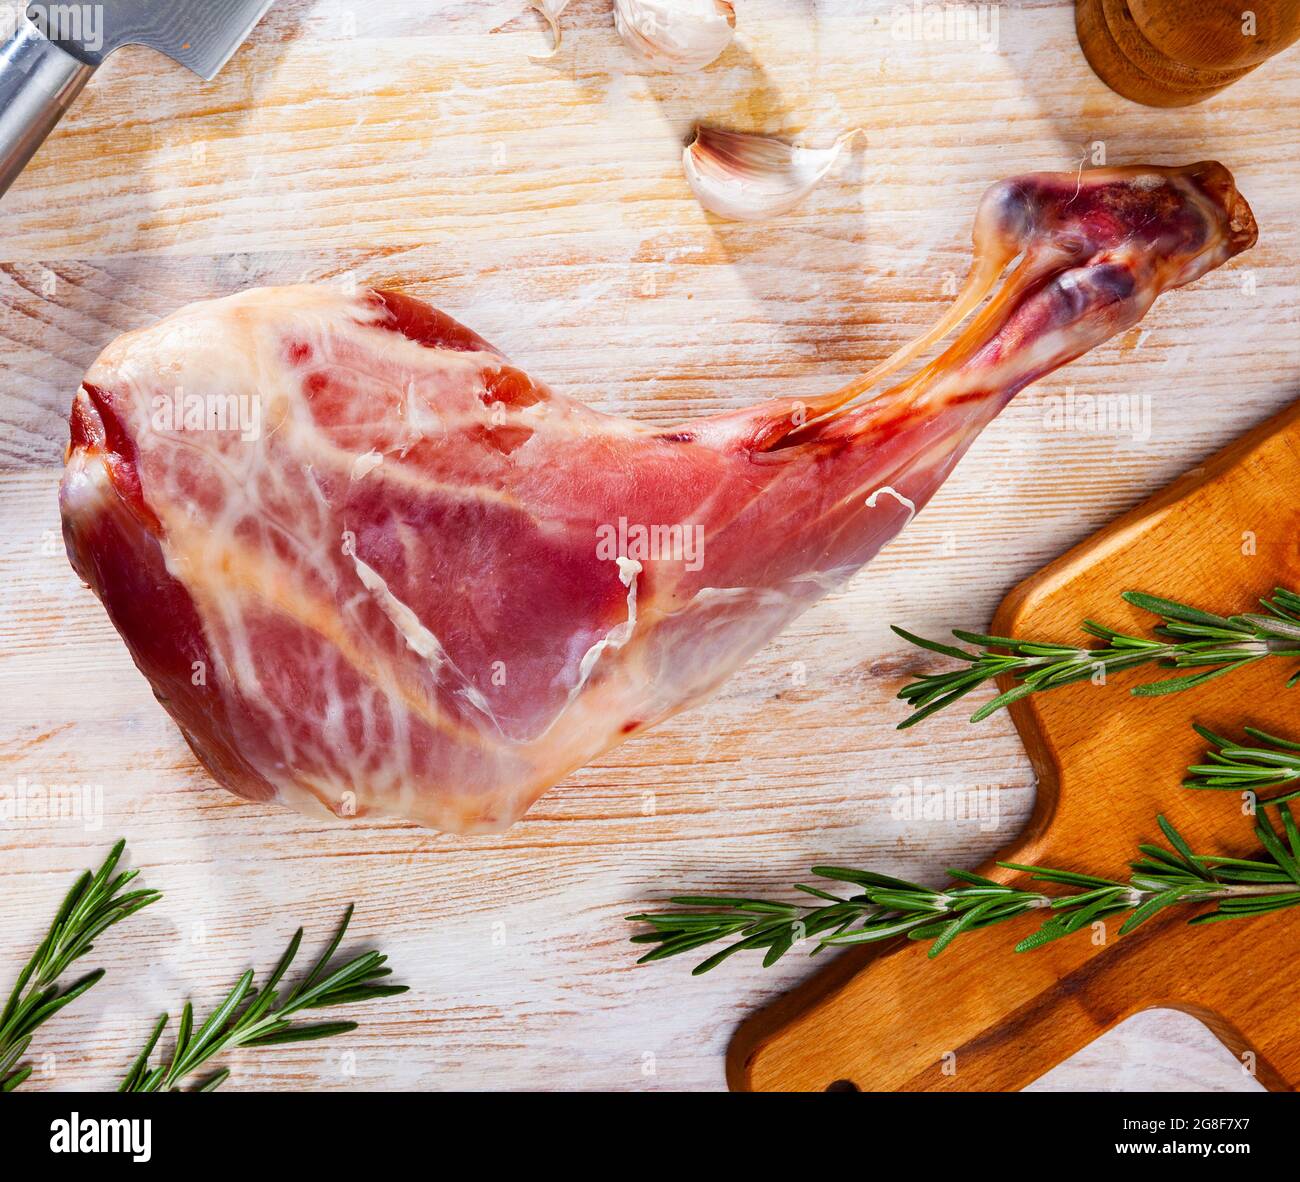 Rohes Bein der Ziege mit Zutaten zum Kochen Stockfotografie - Alamy